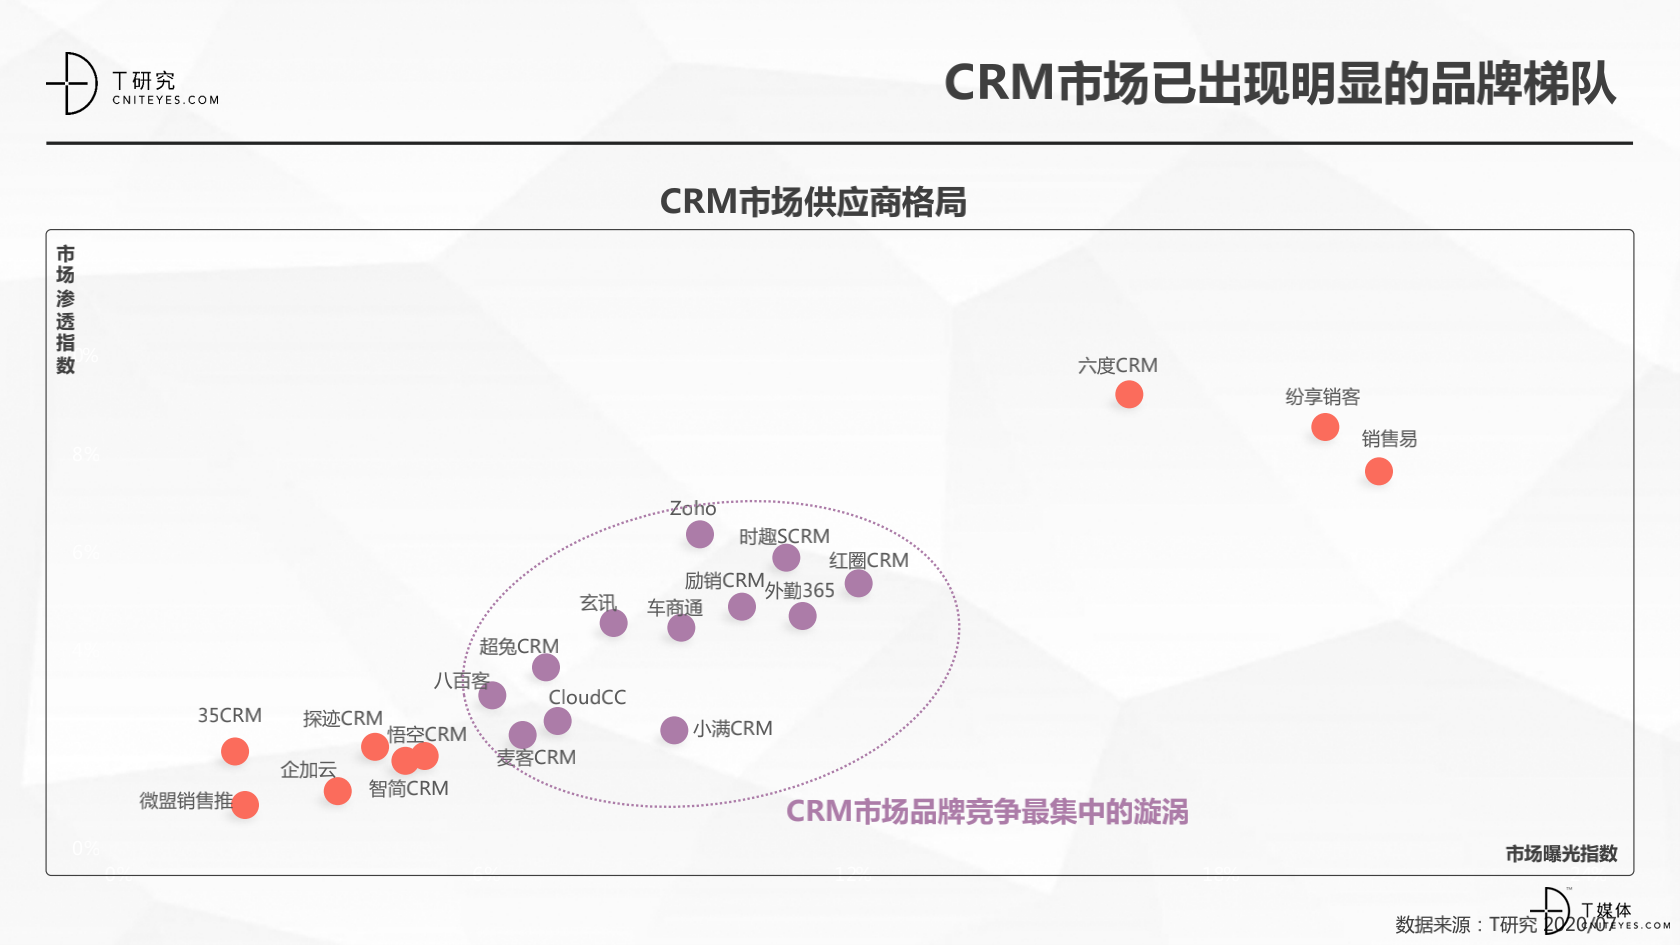 2_2020中国CRM指数测评报告v1.5_07.png